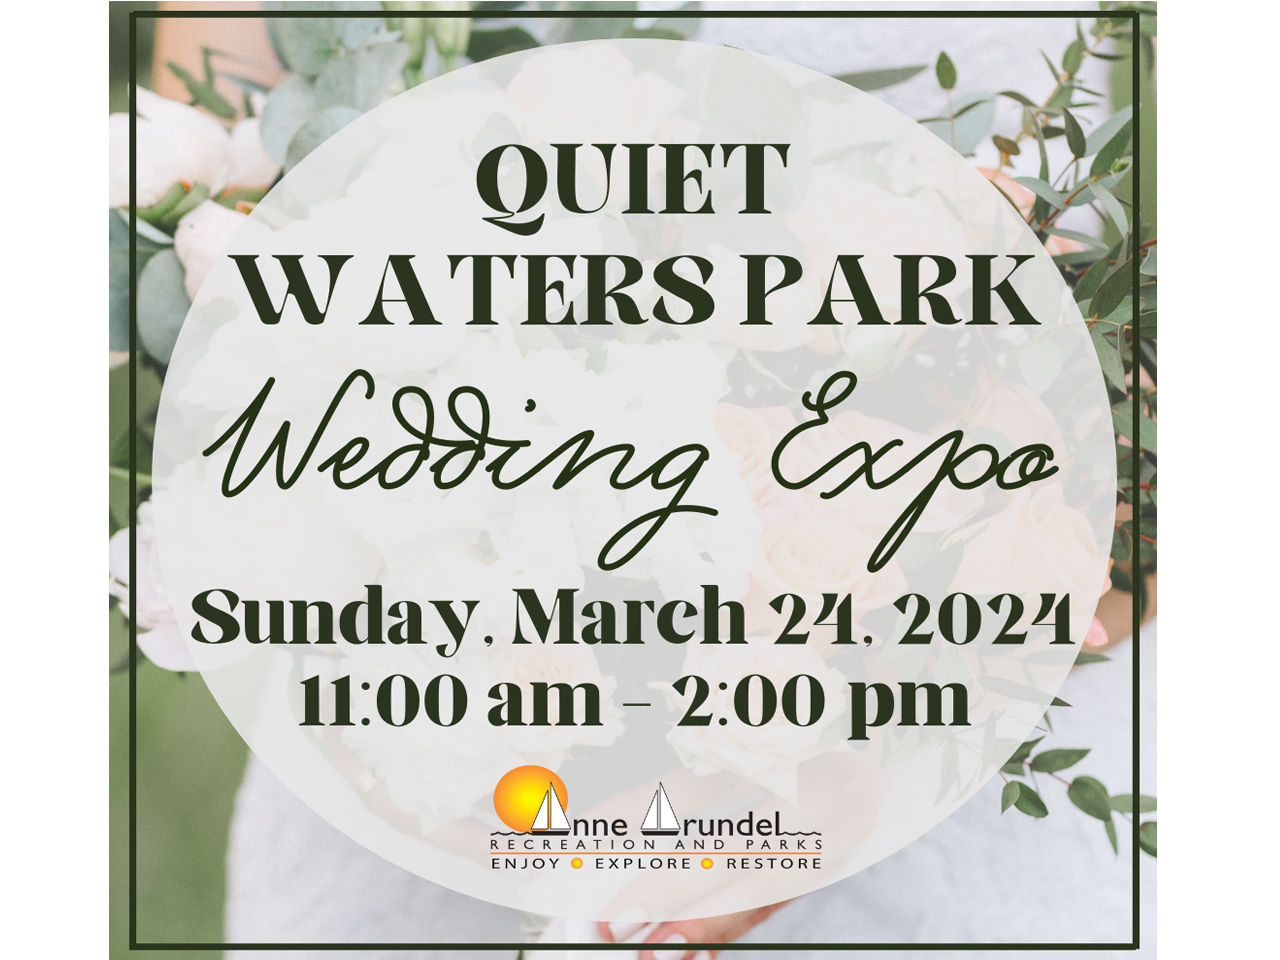 Quiet Waters Park Wedding Expo